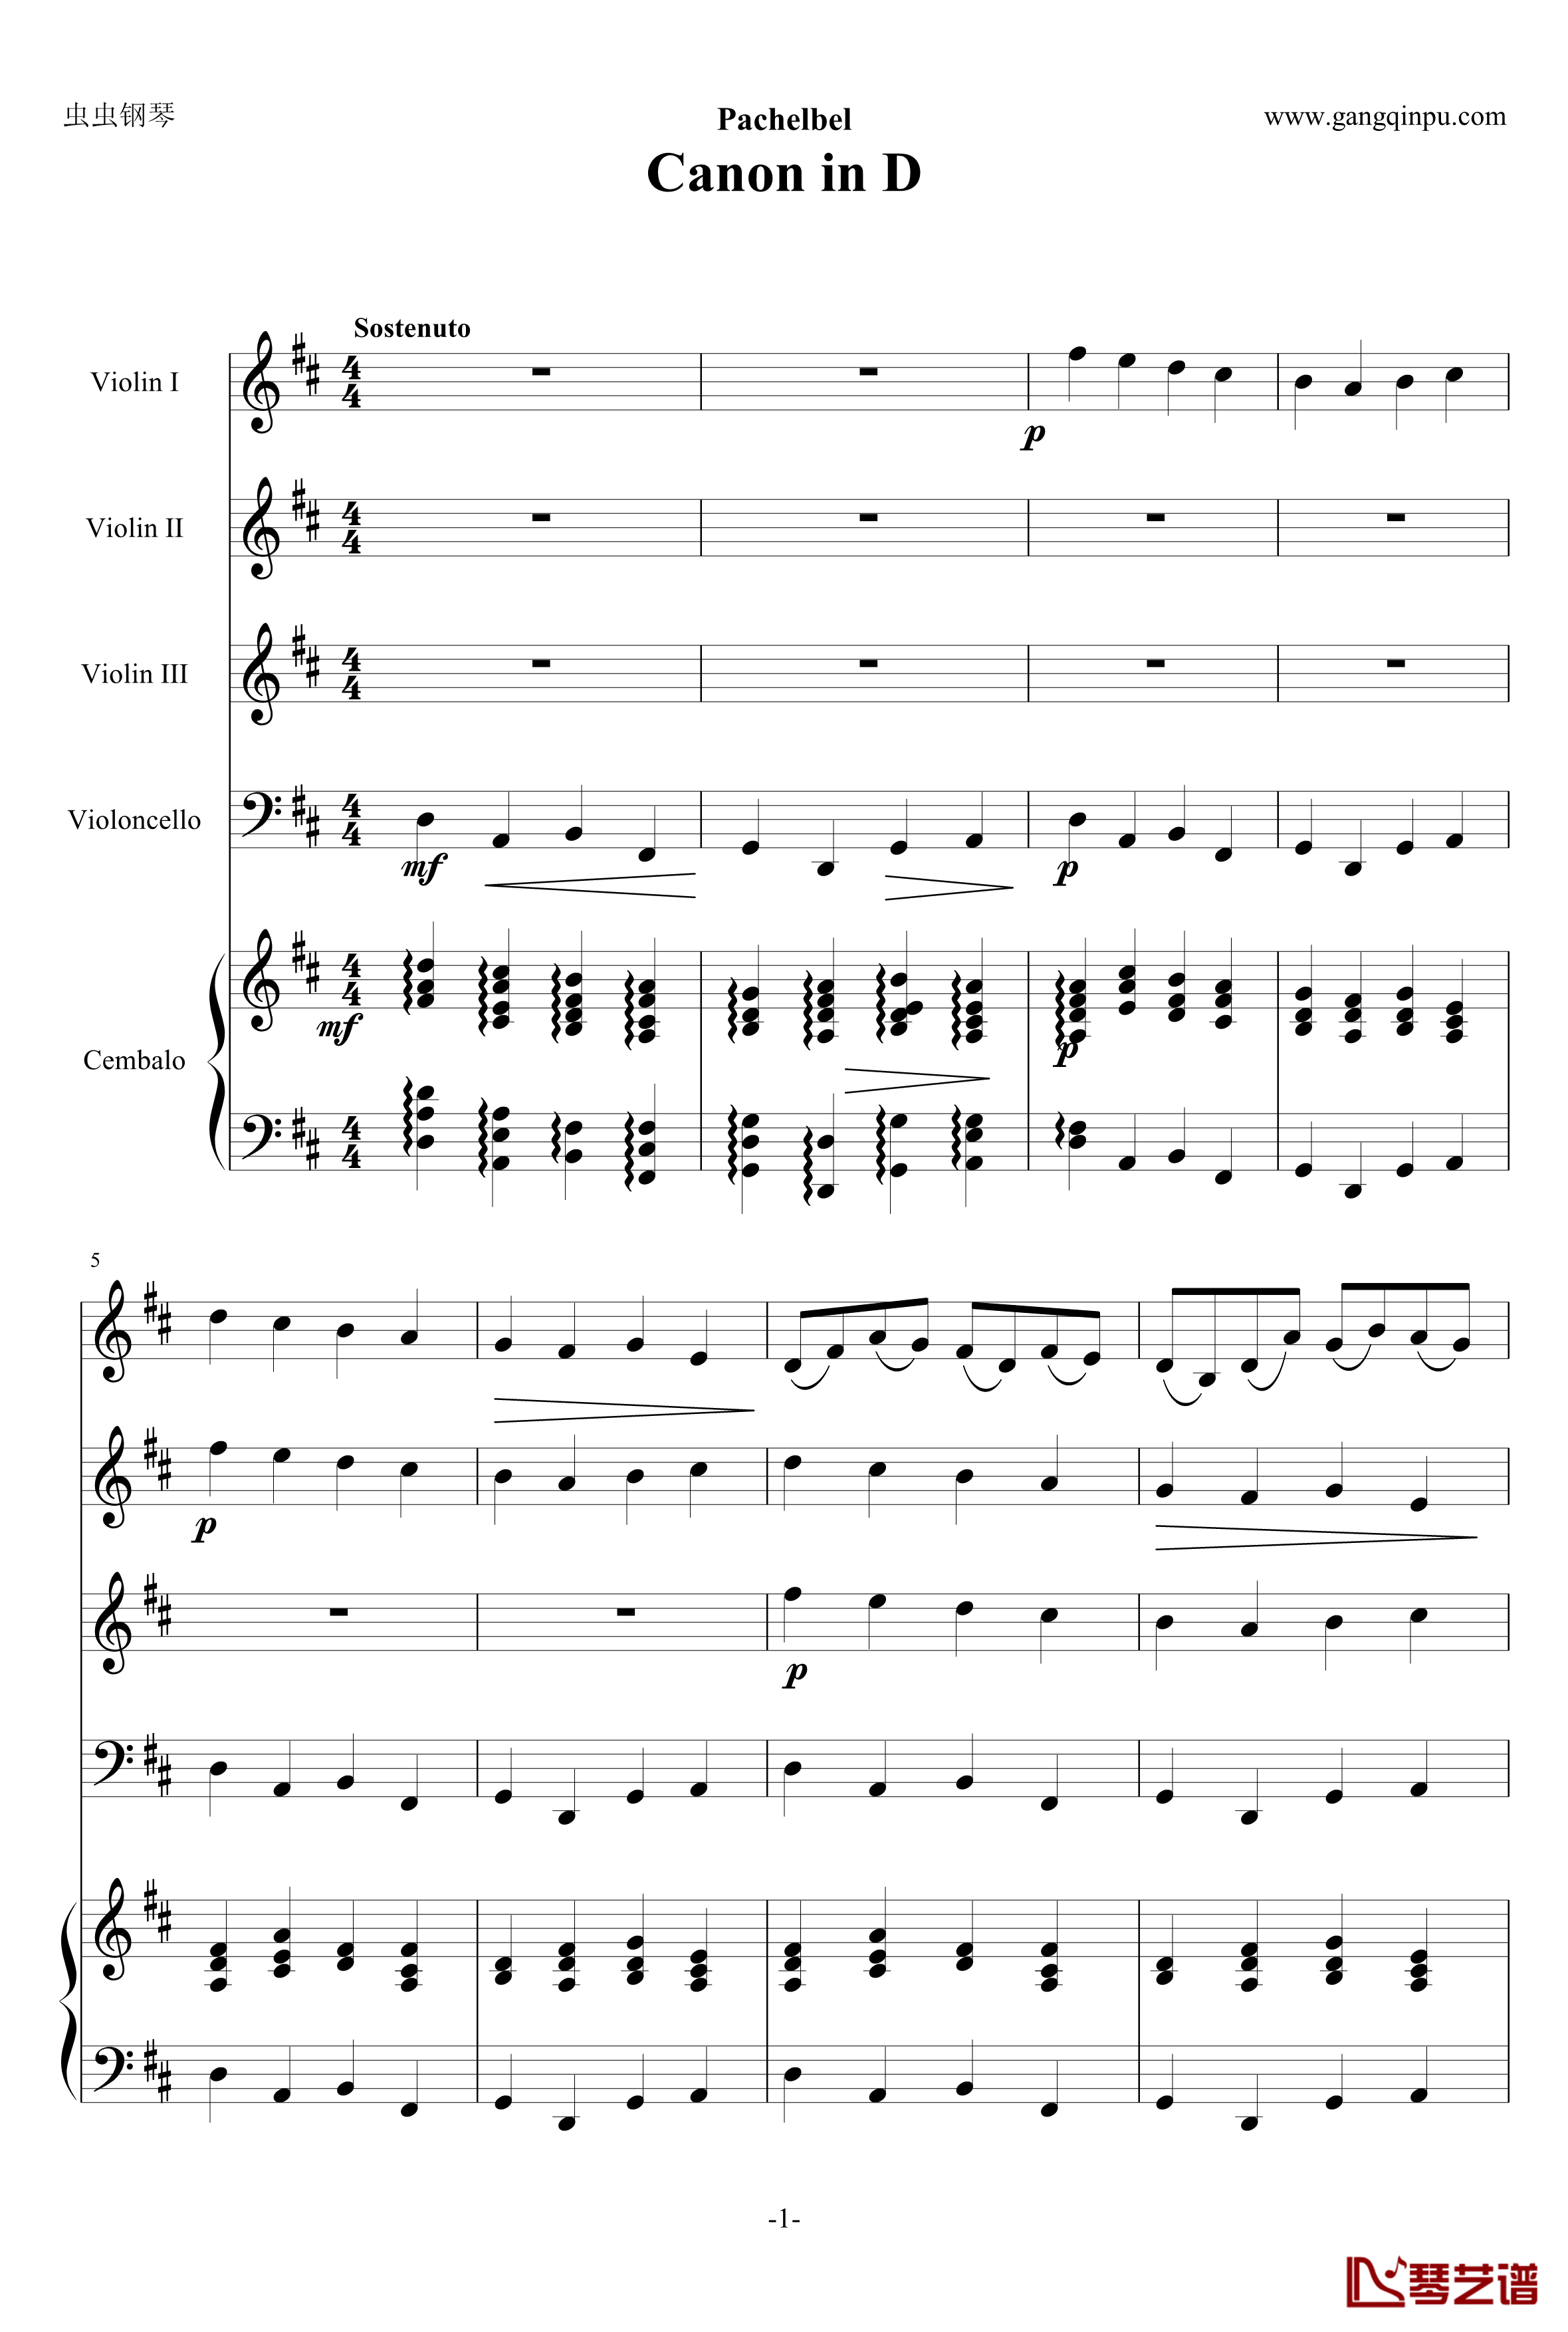 卡农钢琴谱-原版引进-帕赫贝尔-Pachelbel1